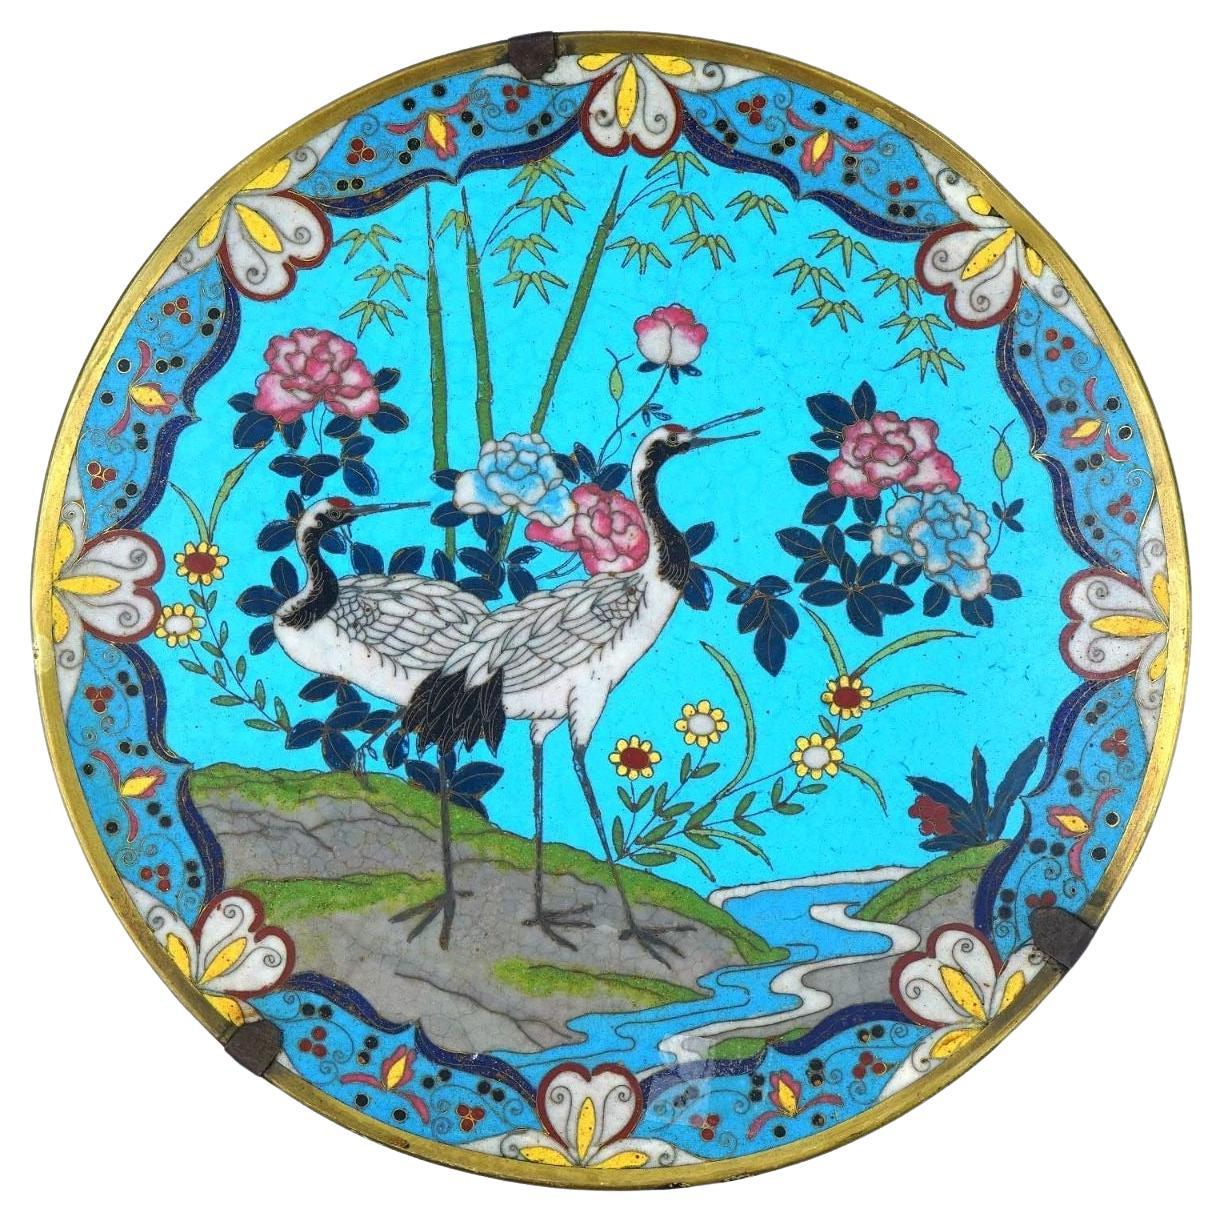 Cloisonné-Teller aus dem 19. Jahrhundert, der Kraniche darstellt